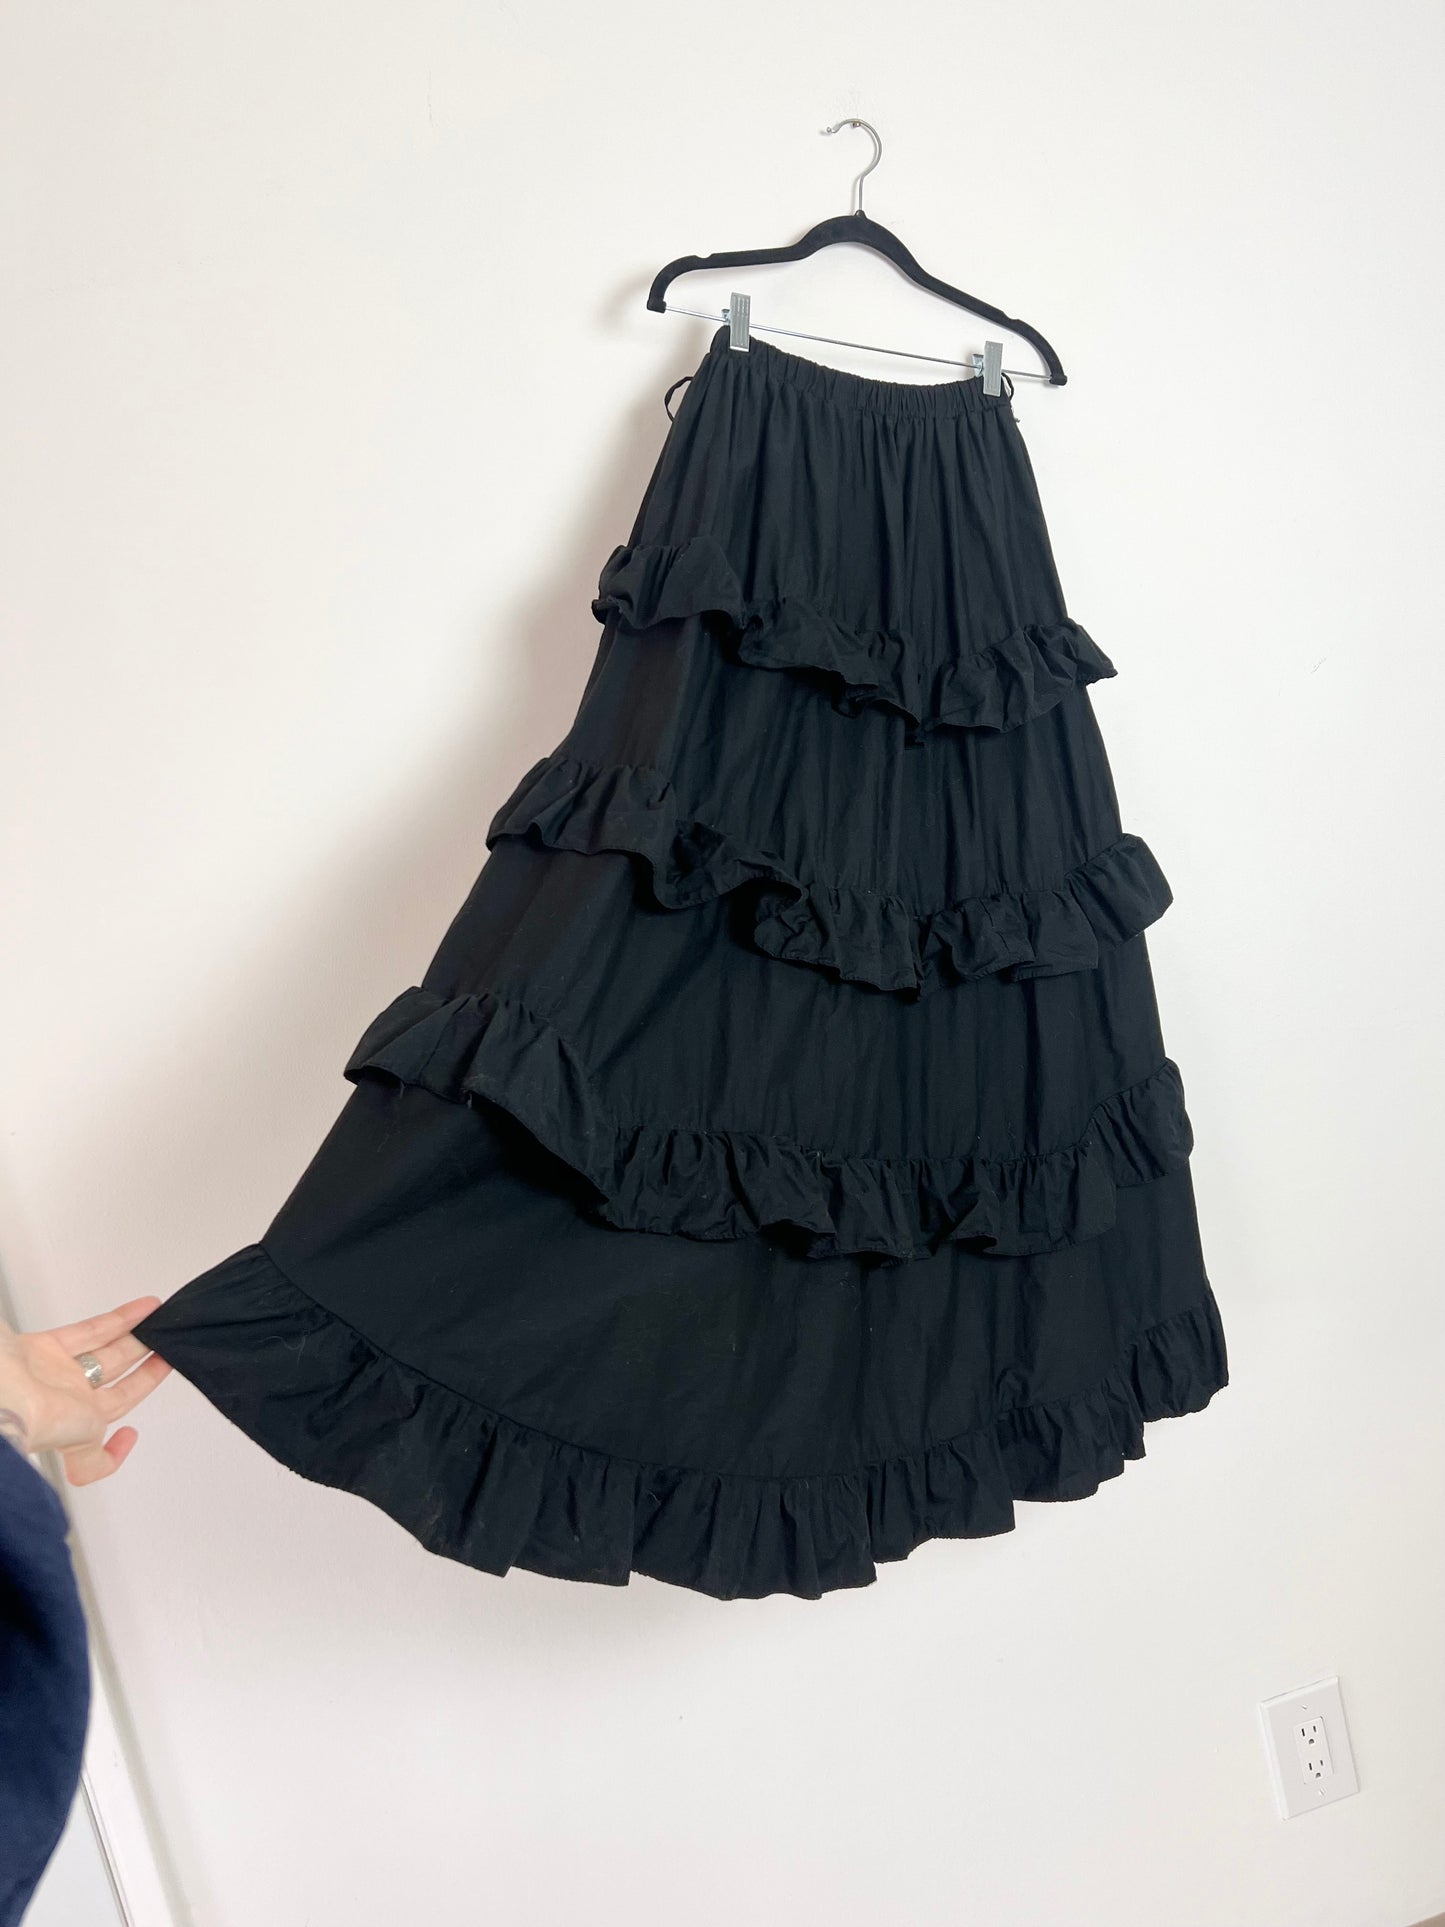 Euro Inspired Belle Poque Max Skirt